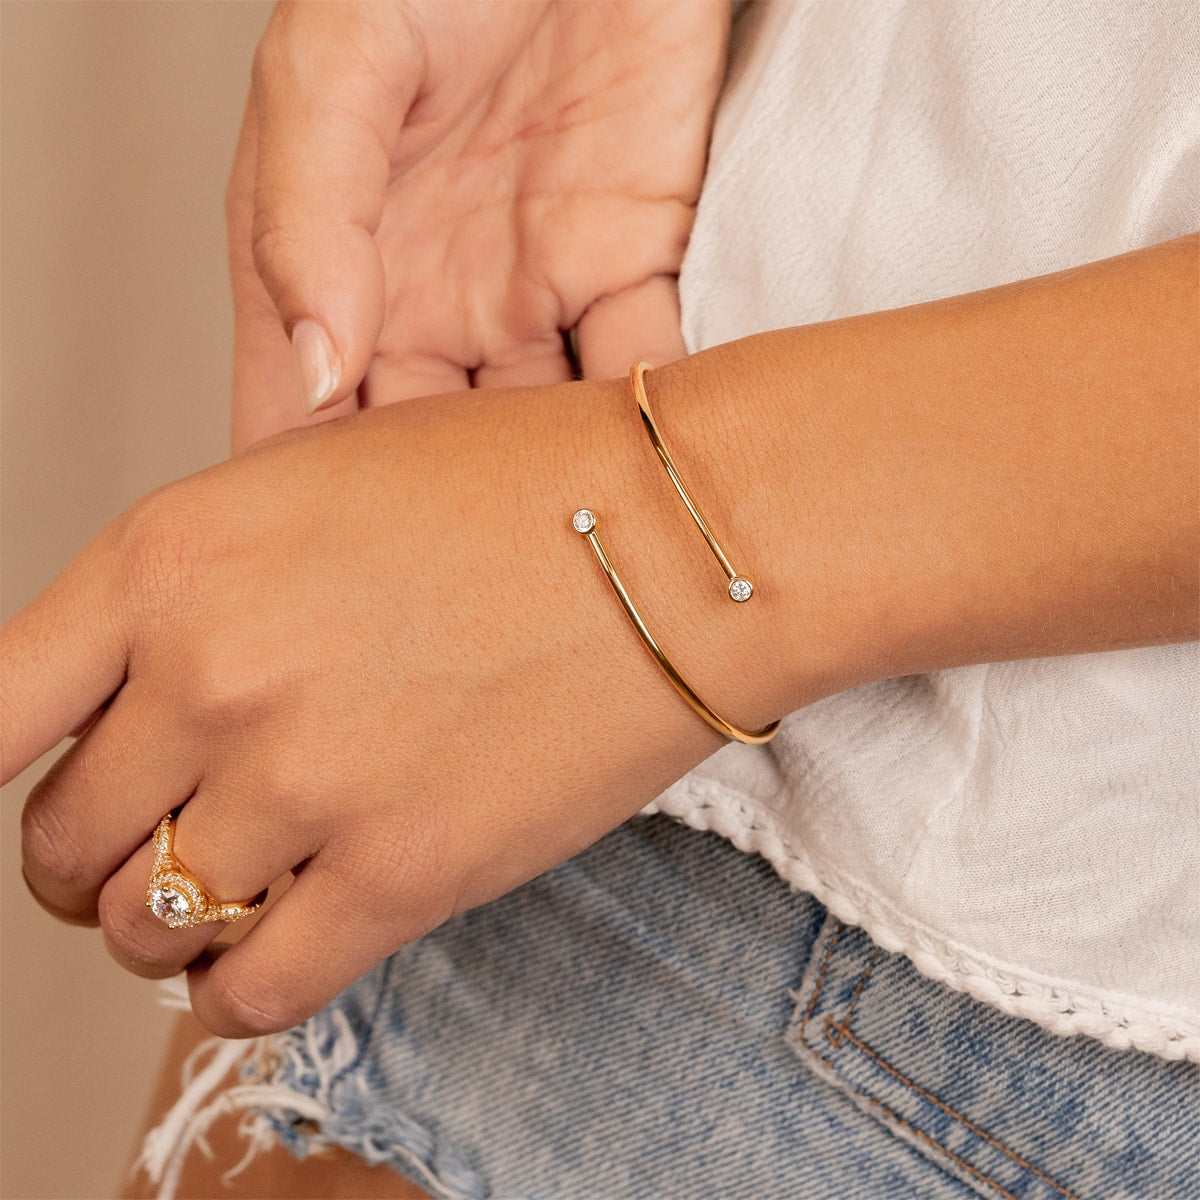 Affordable simple gold bangle stud bracelet